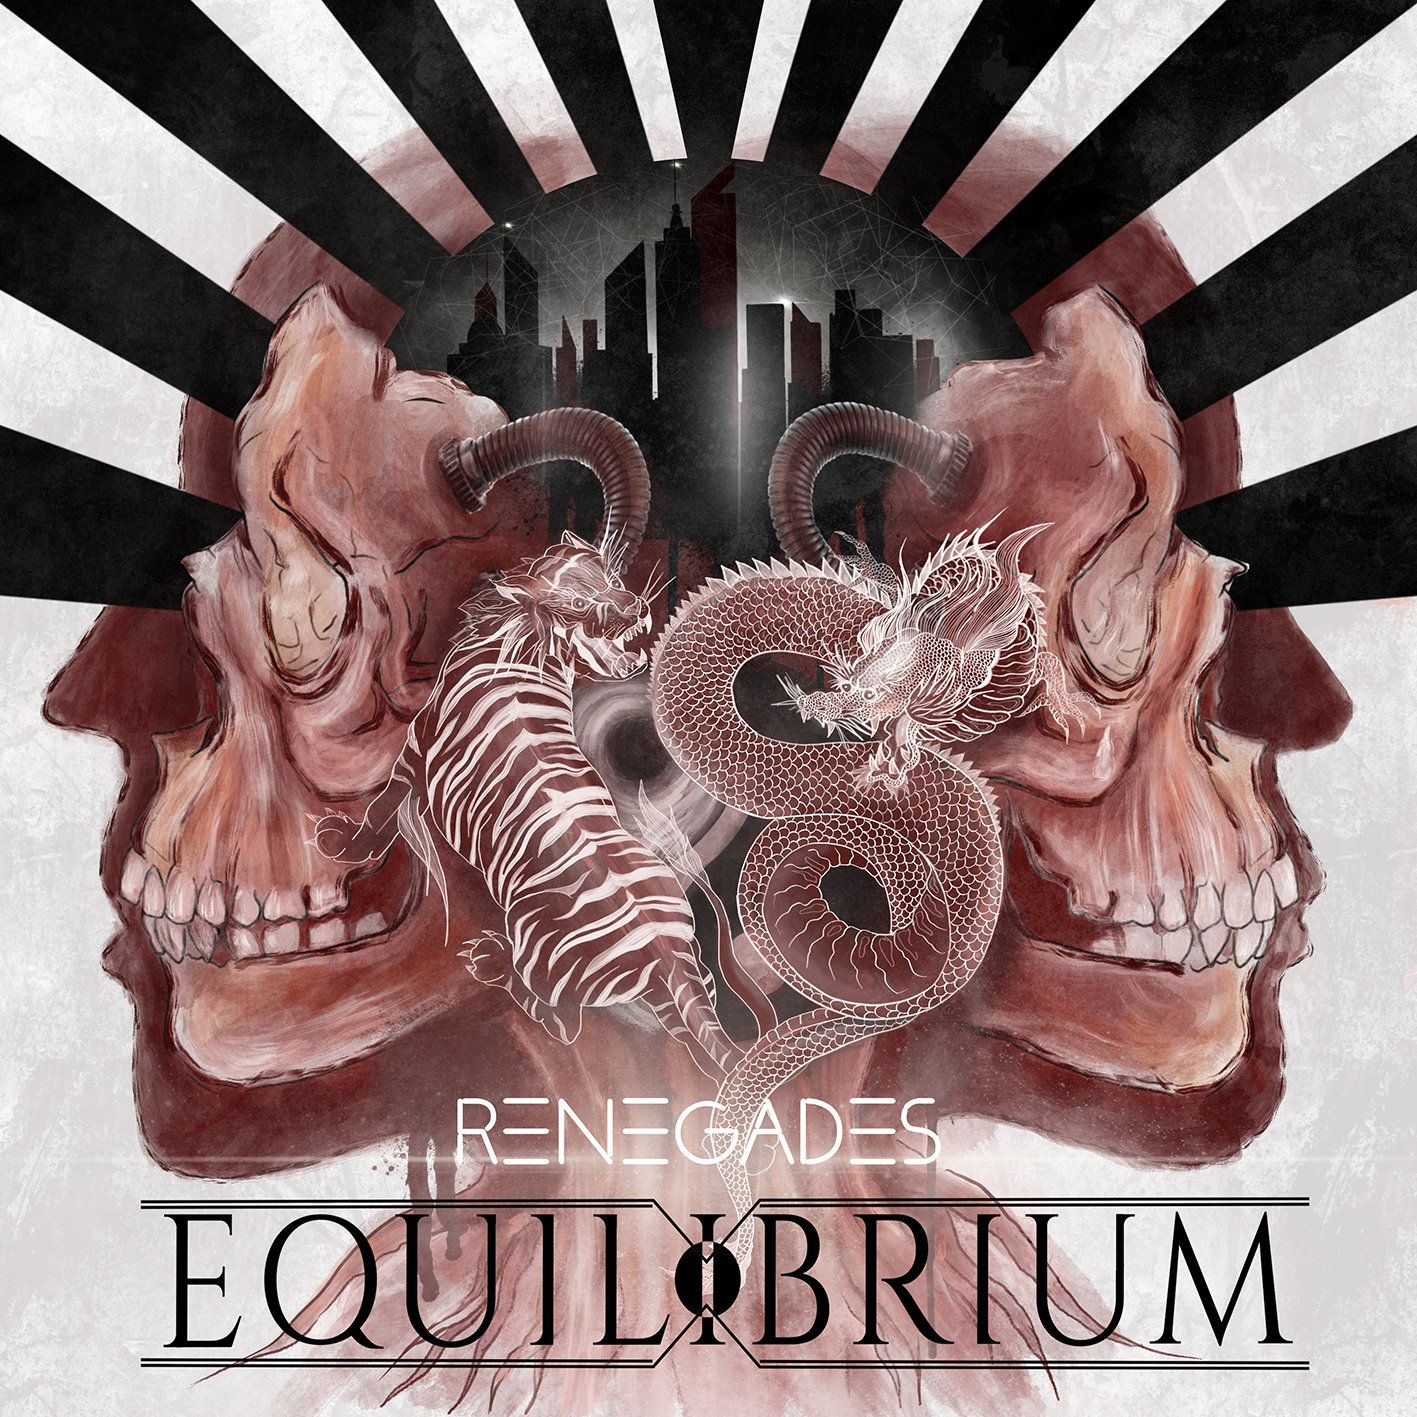 Neues Albumcover von "Renegades" enthüllt